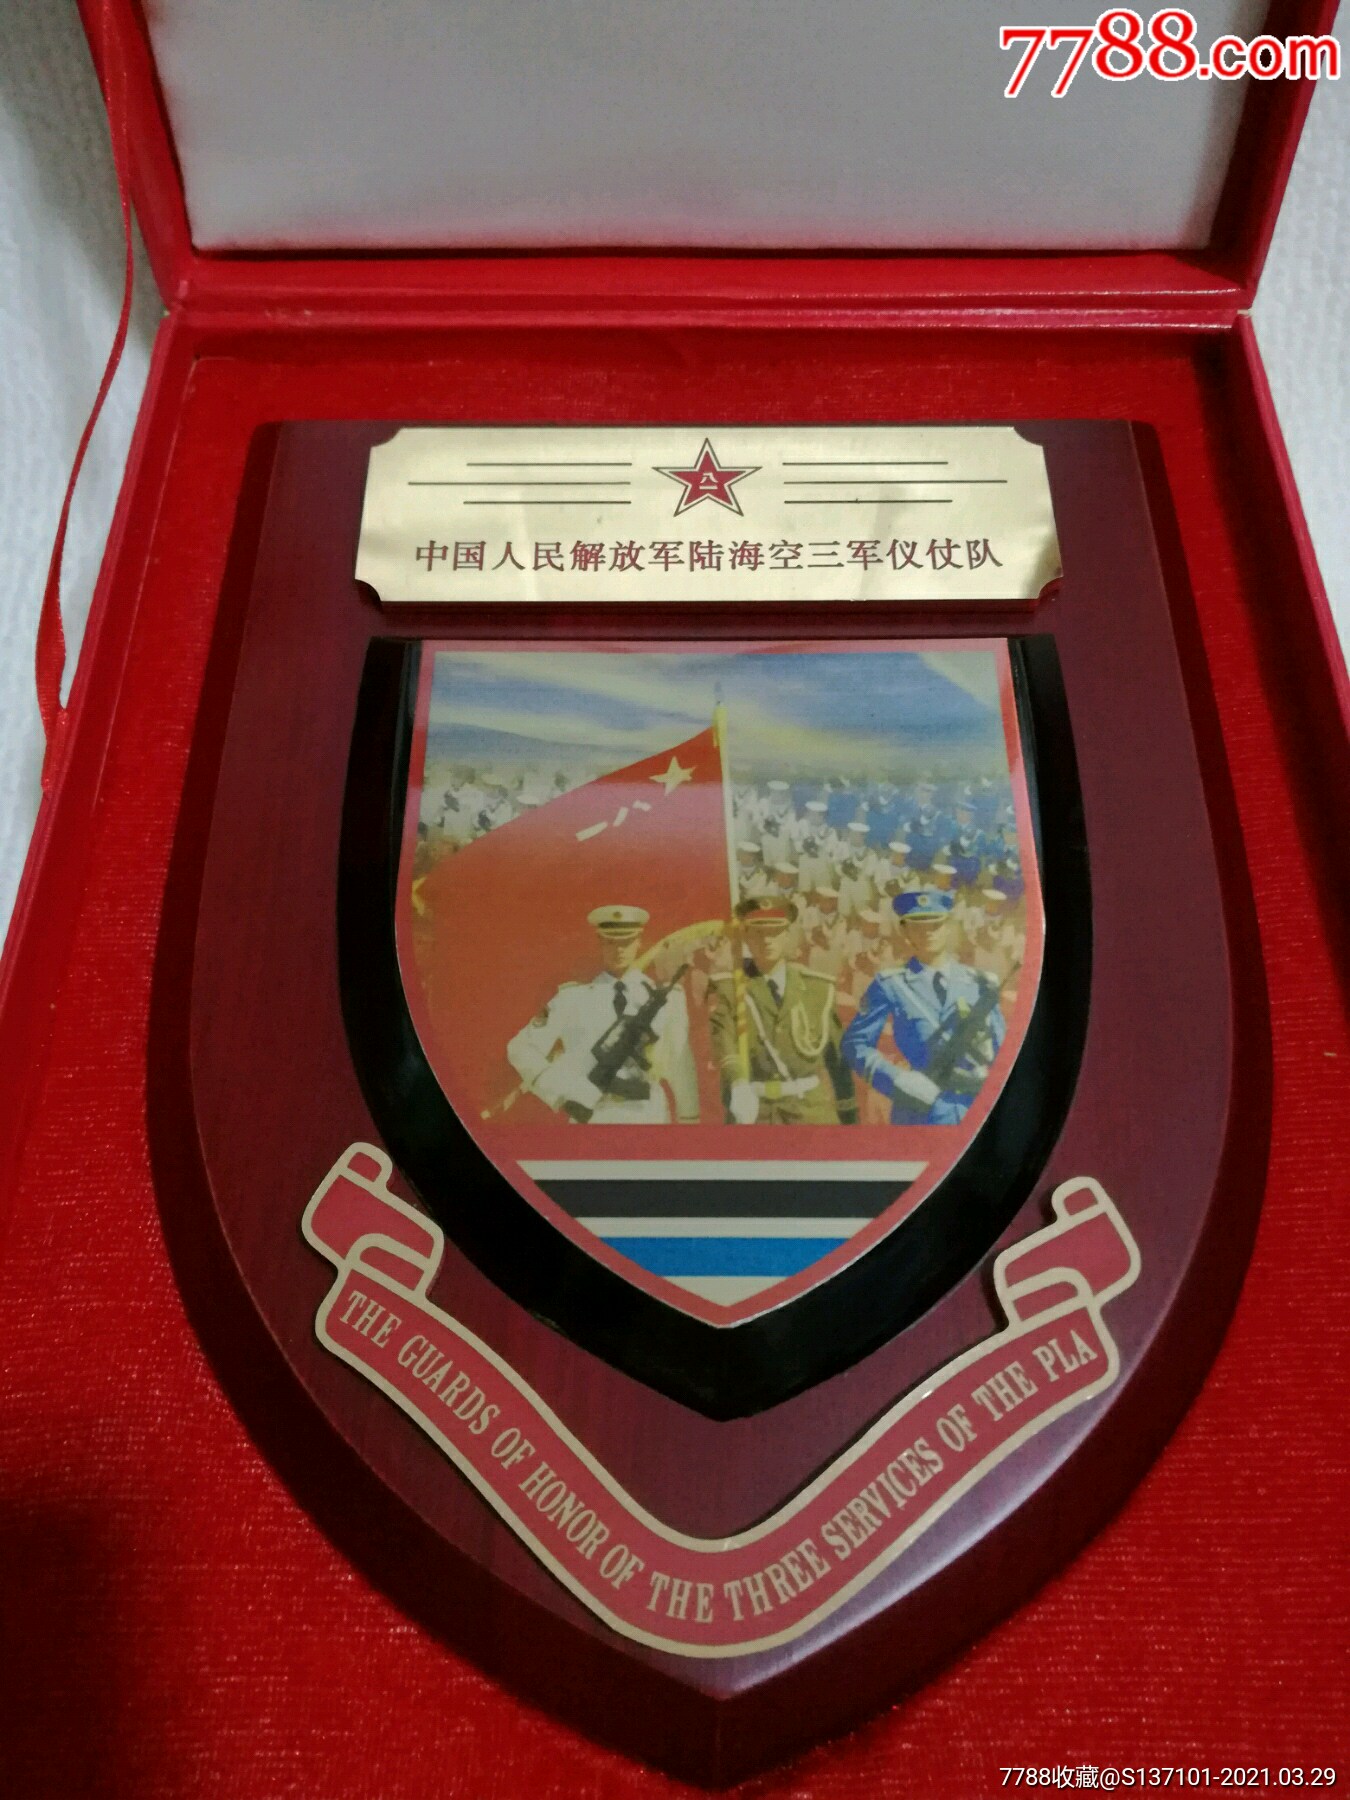 三军仪仗队建队50周年"军旅标兵"称号10周年纪念_第3张_7788徽章收藏